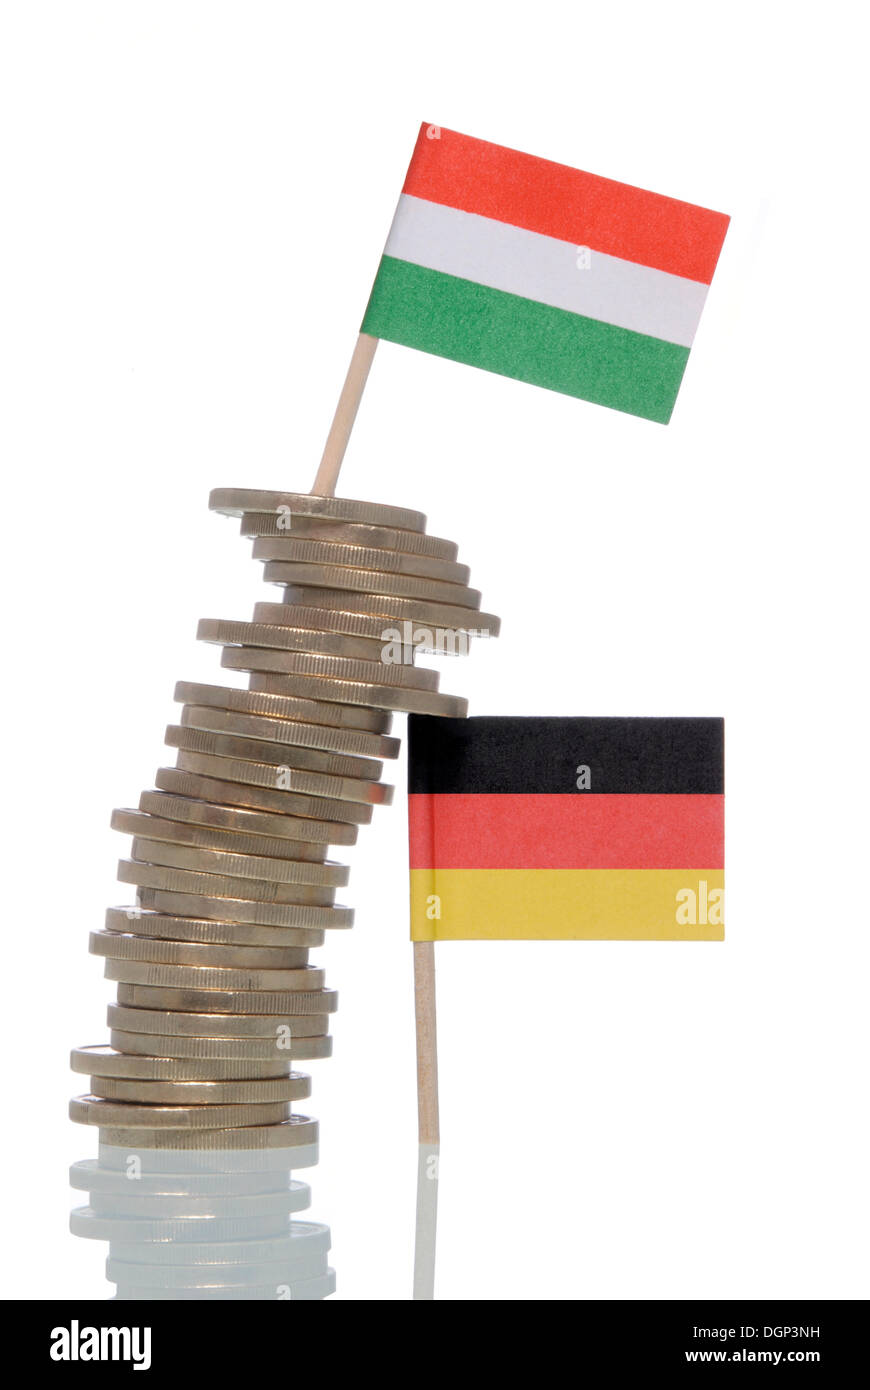 Traballante pila di monete in Euro supportato da una bandiera tedesca, una bandiera ungherese sulla parte superiore, immagine simbolica per la crisi finanziaria dell'Euro Foto Stock